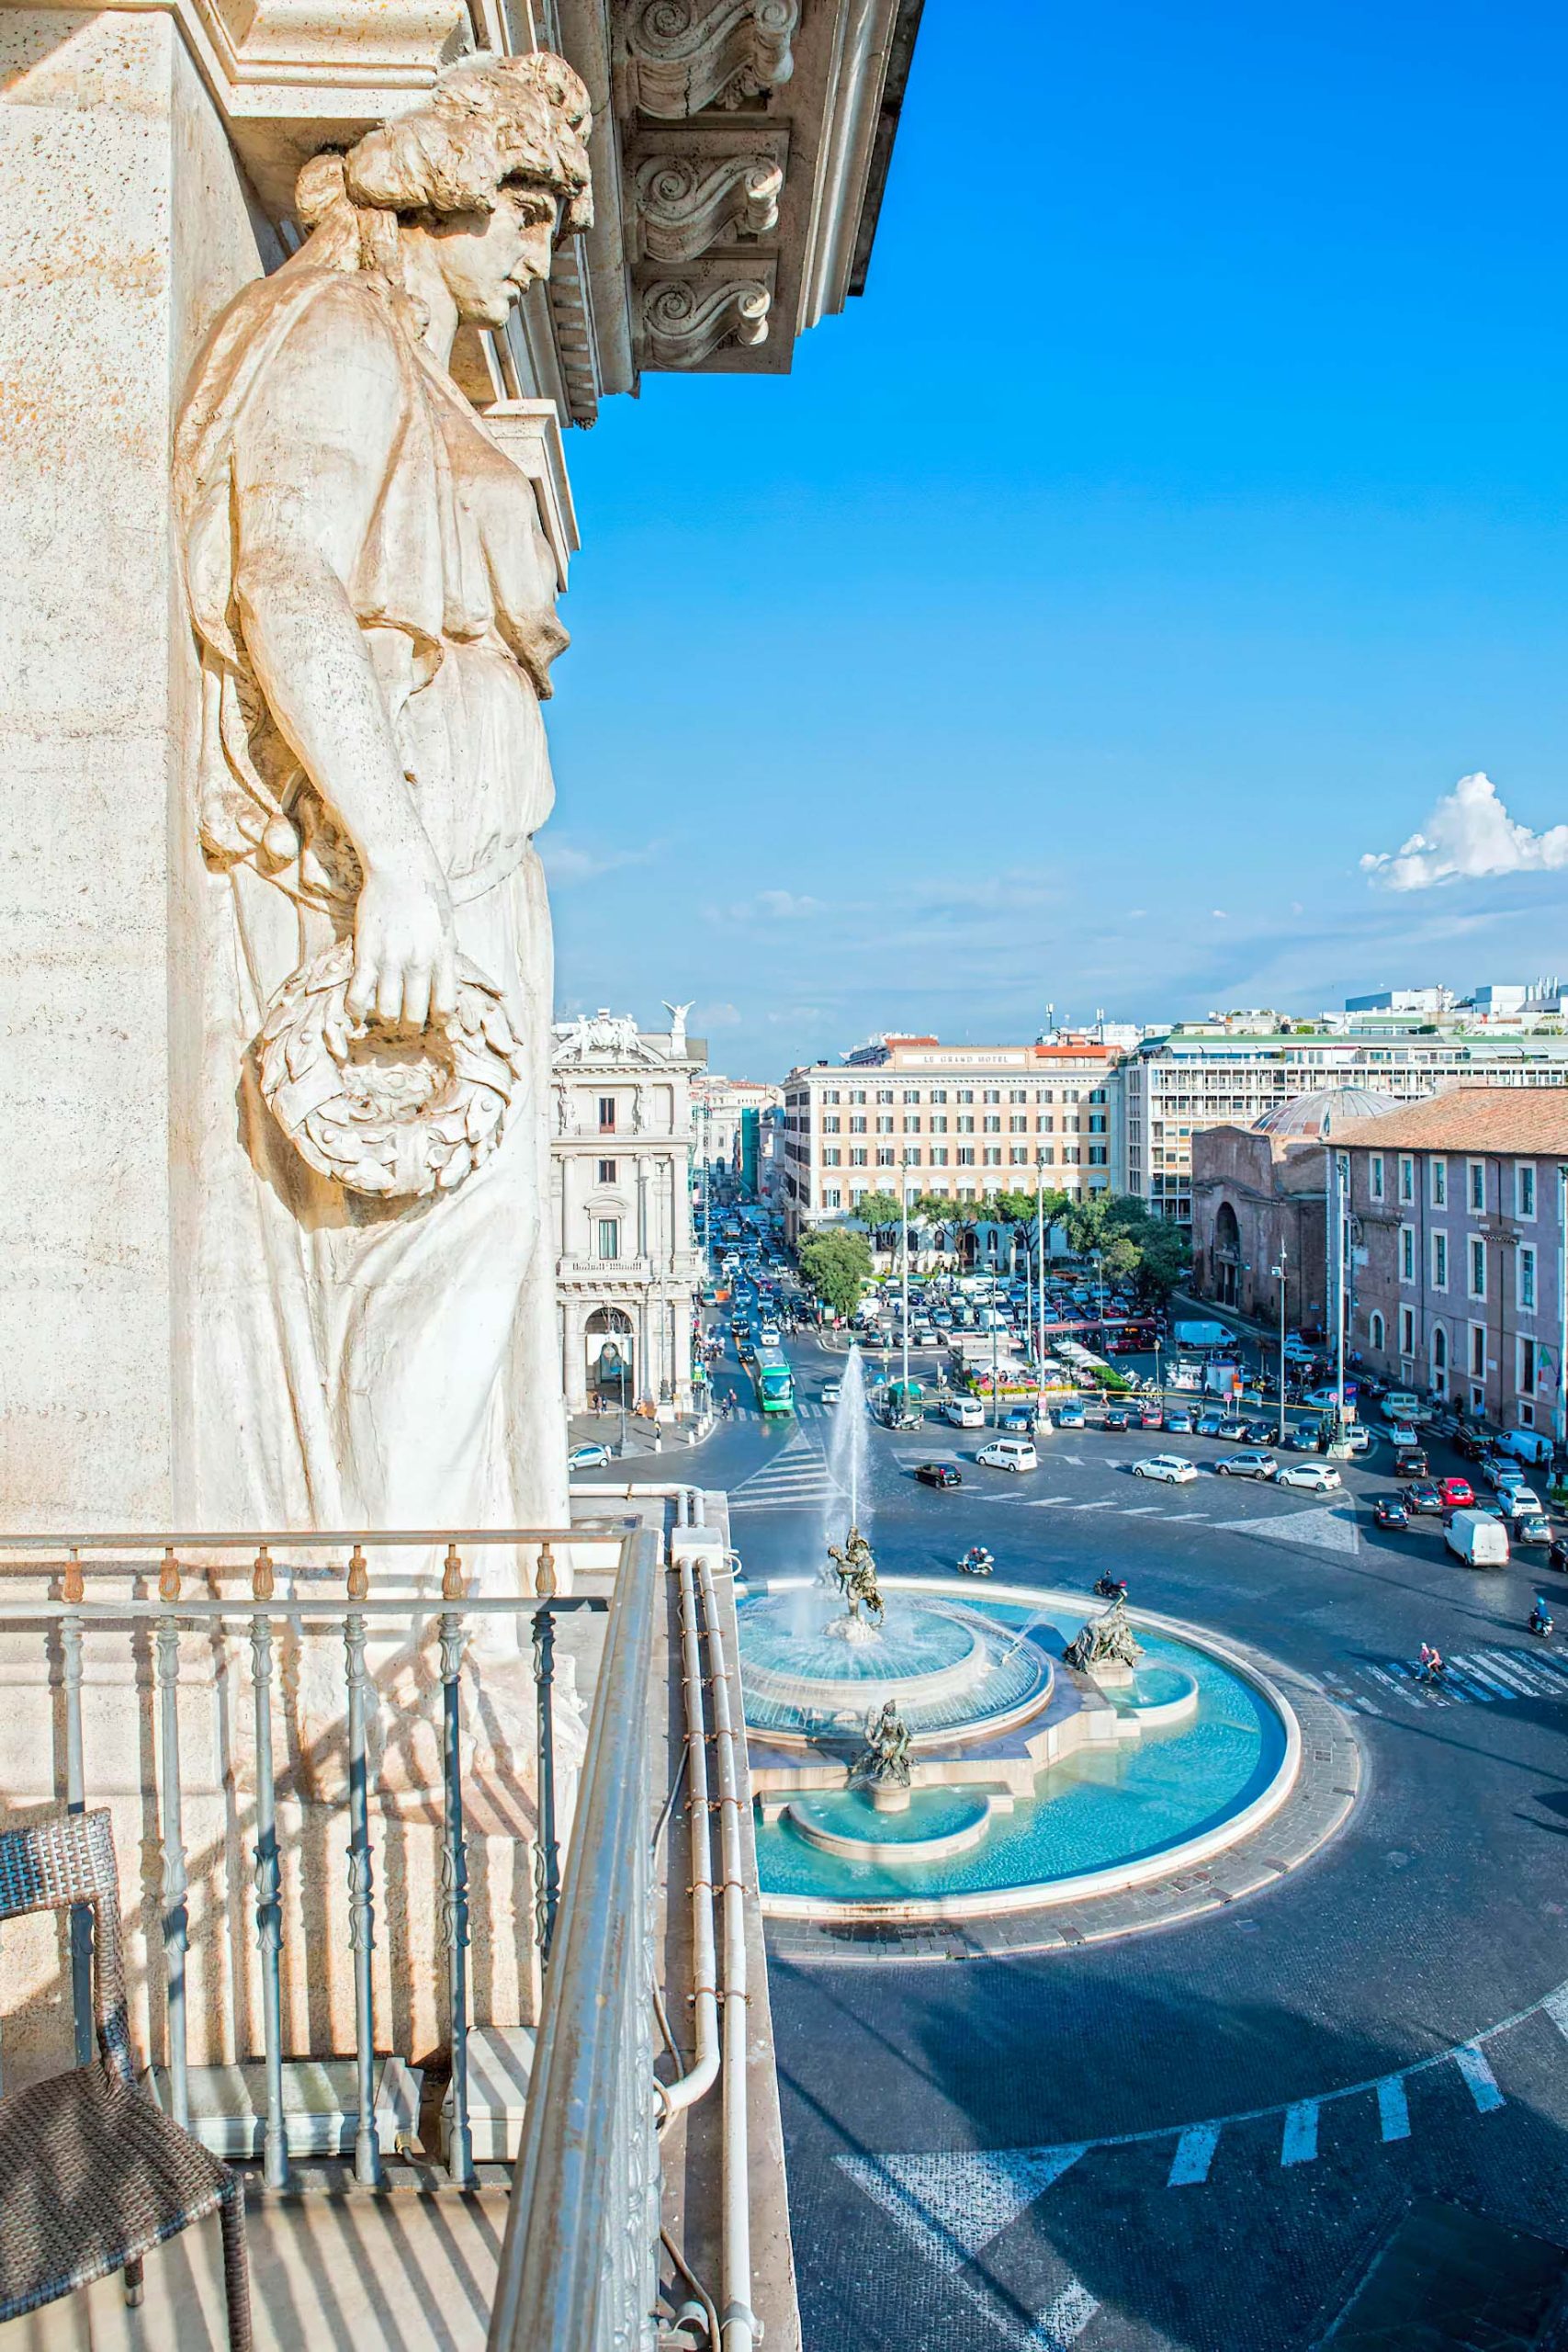 Anantara Palazzo Naiadi Rome Hotel – Rome, Italy – Guest Suite View